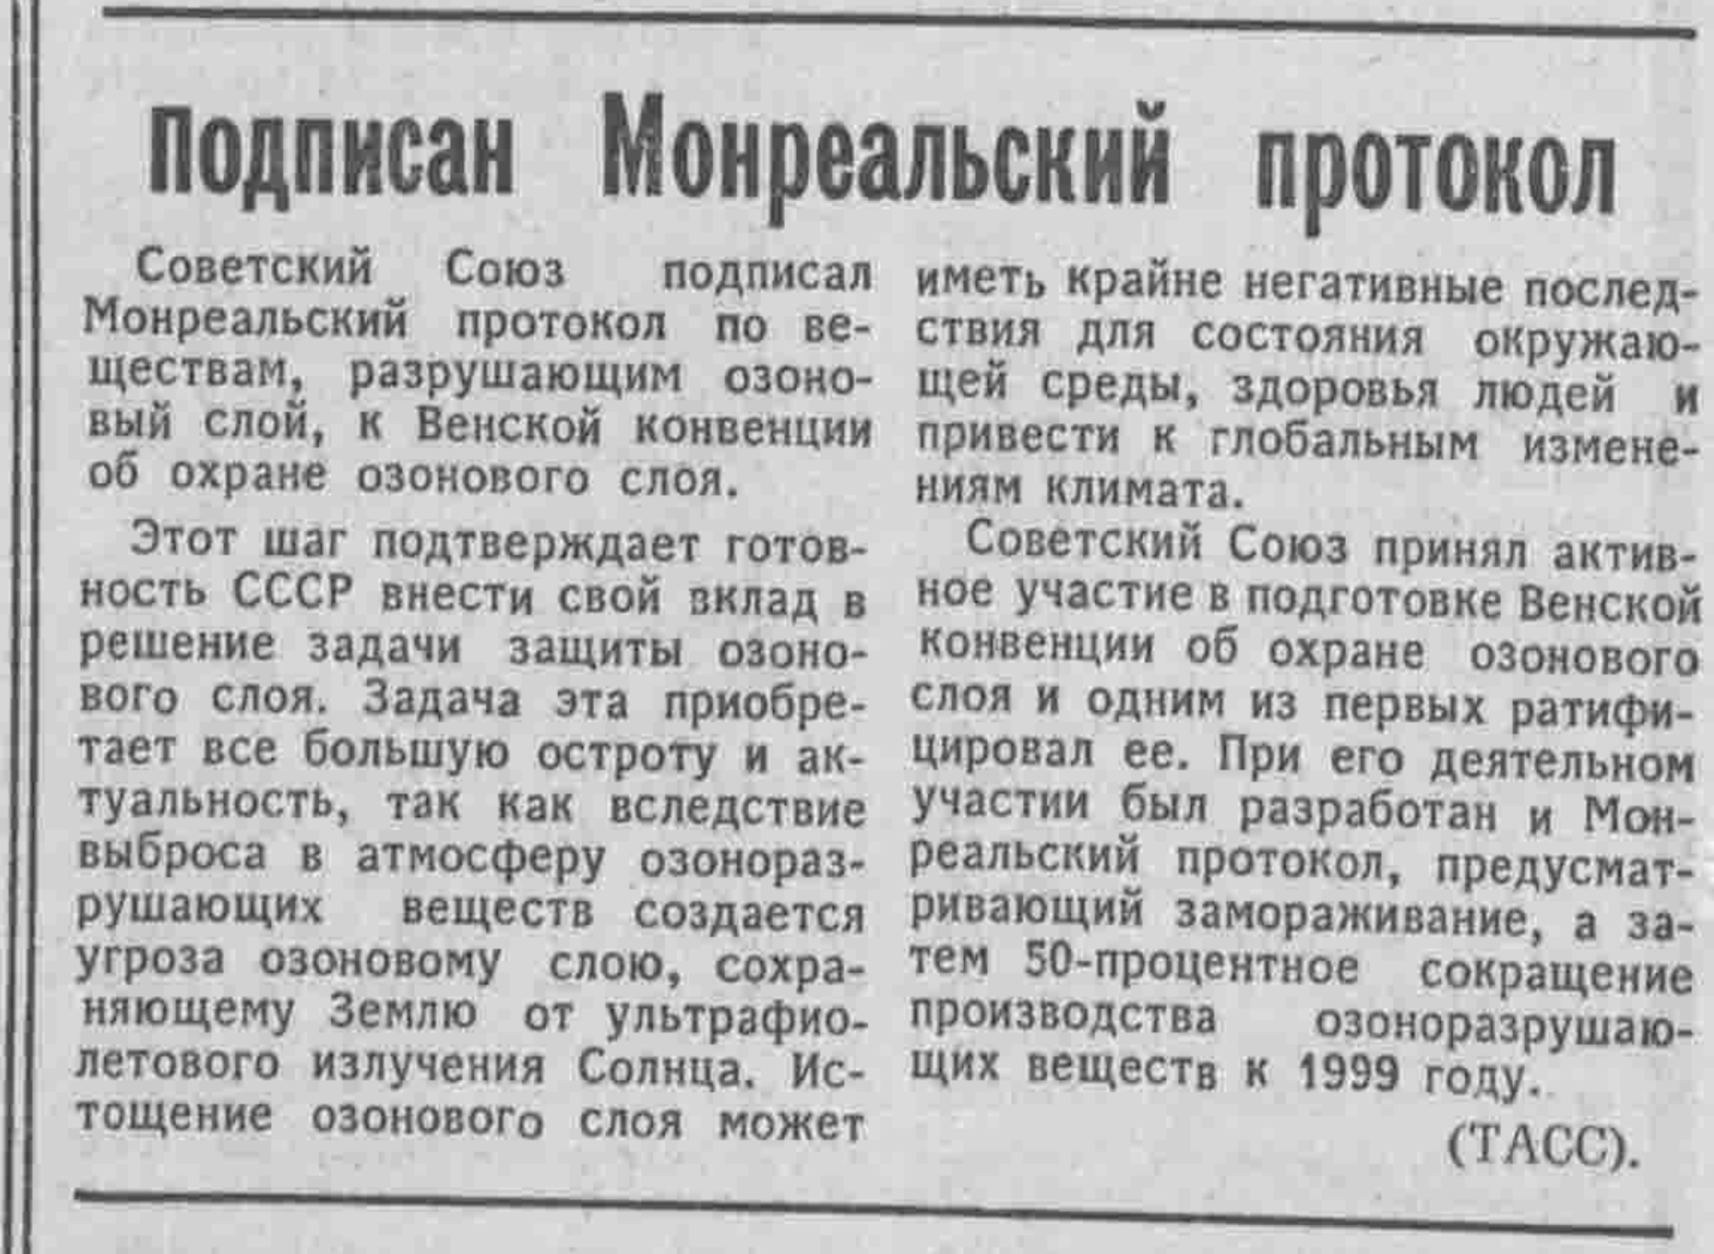 Заметка о Монреальском протоколе в газете “Известия”, № 7, 7 января 1988 года